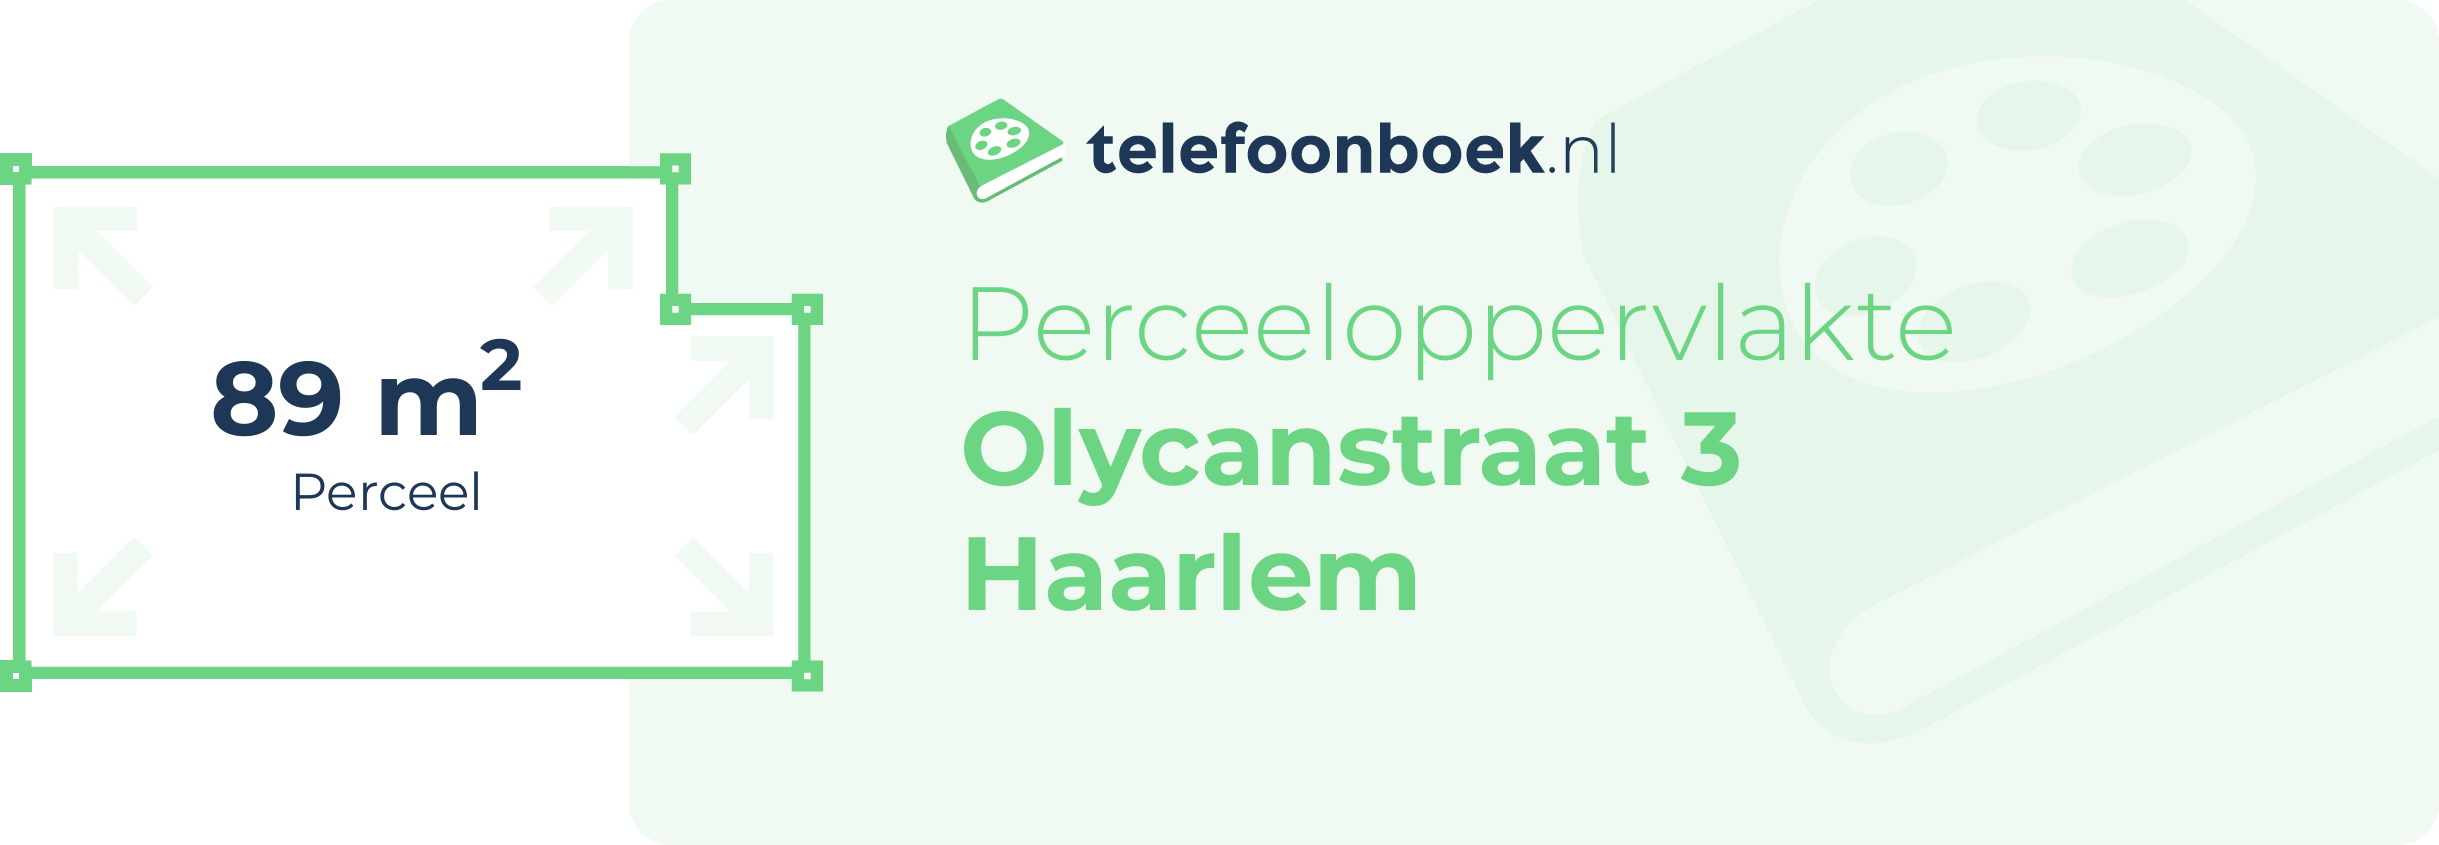 Perceeloppervlakte Olycanstraat 3 Haarlem